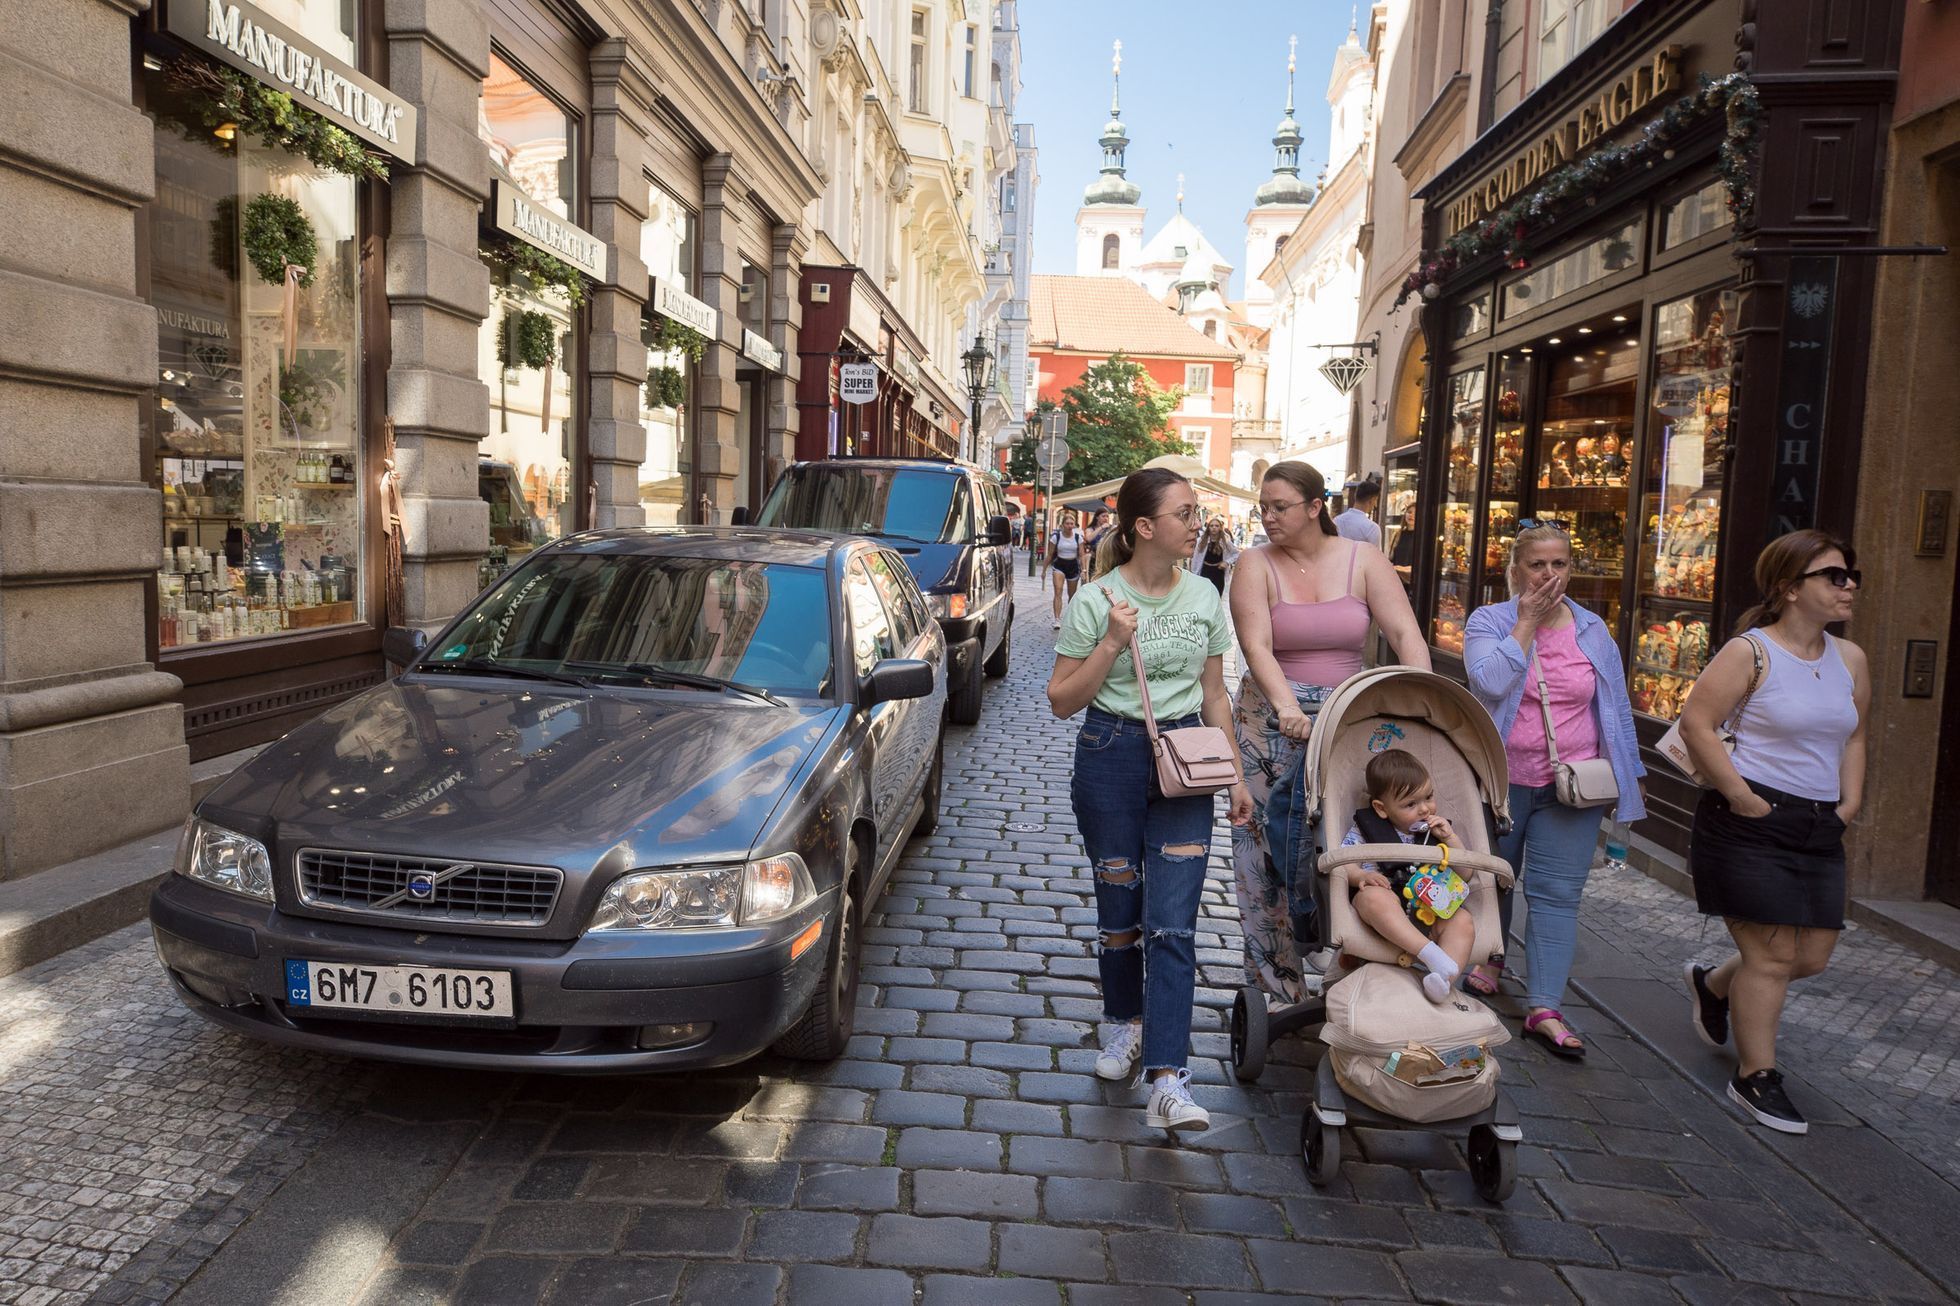 Přeplněné centrum Praha auty, automobilismus, parkování, modré zóny, automobilová doprava